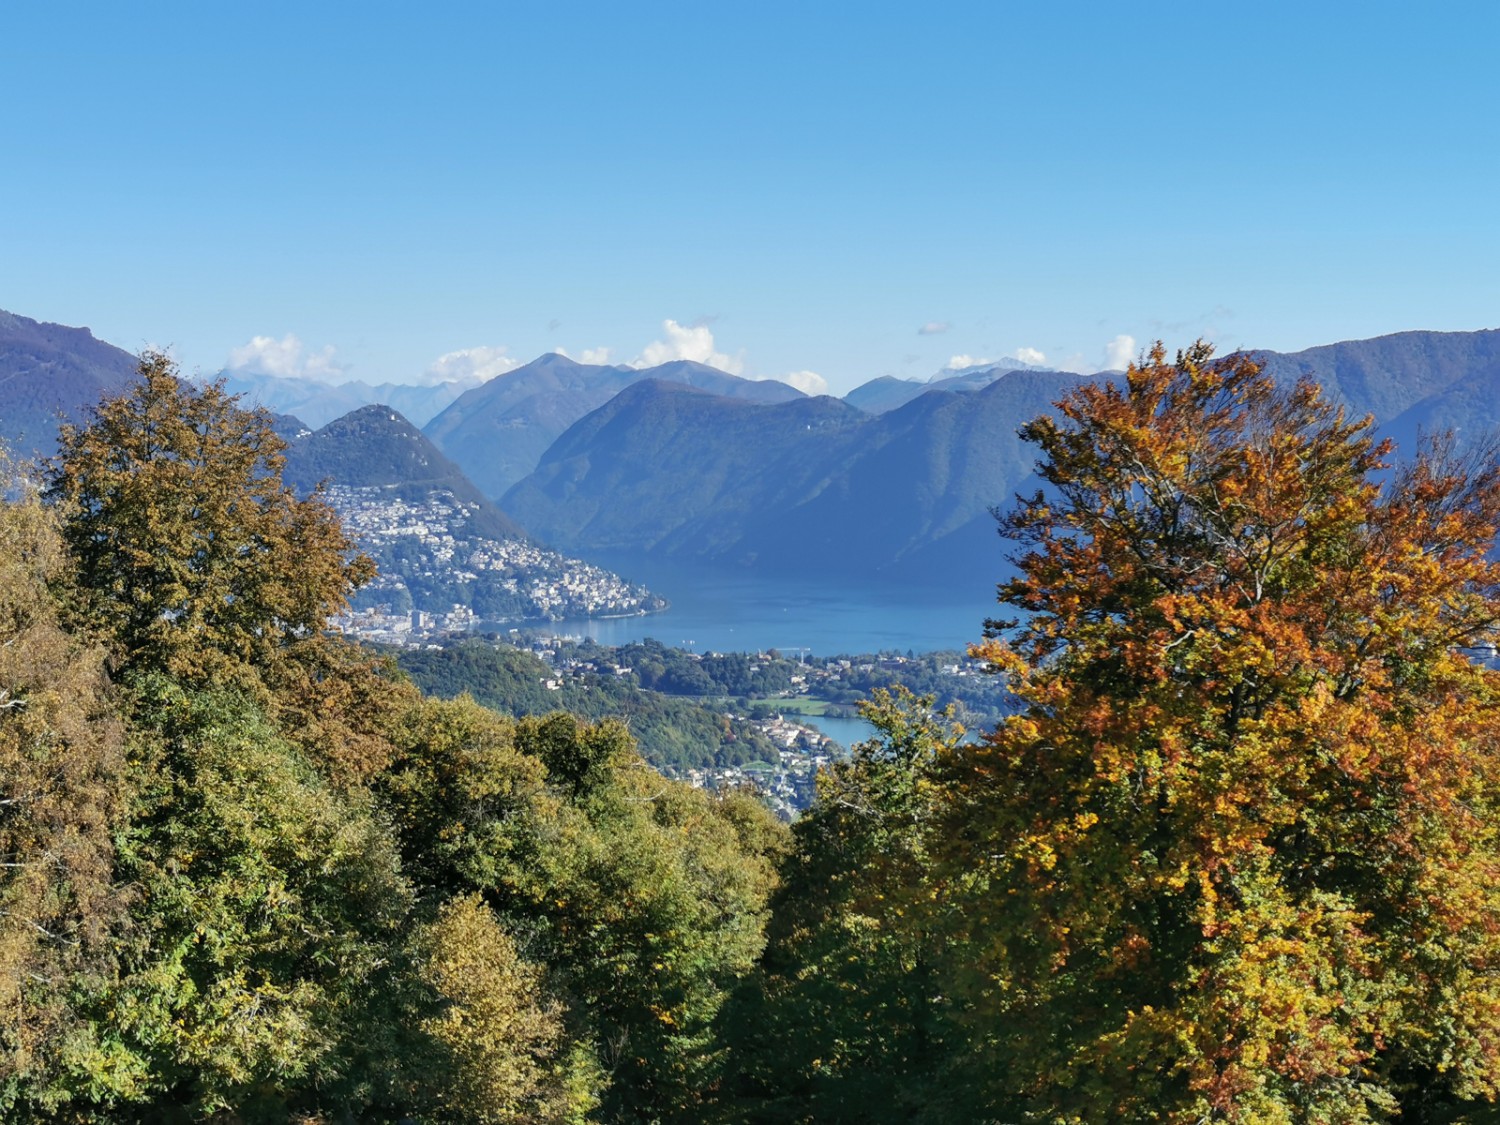 Le Malcantone. La randonnée offre de superbes vues sur le lac de Lugano. Photo: Andreas Staeger